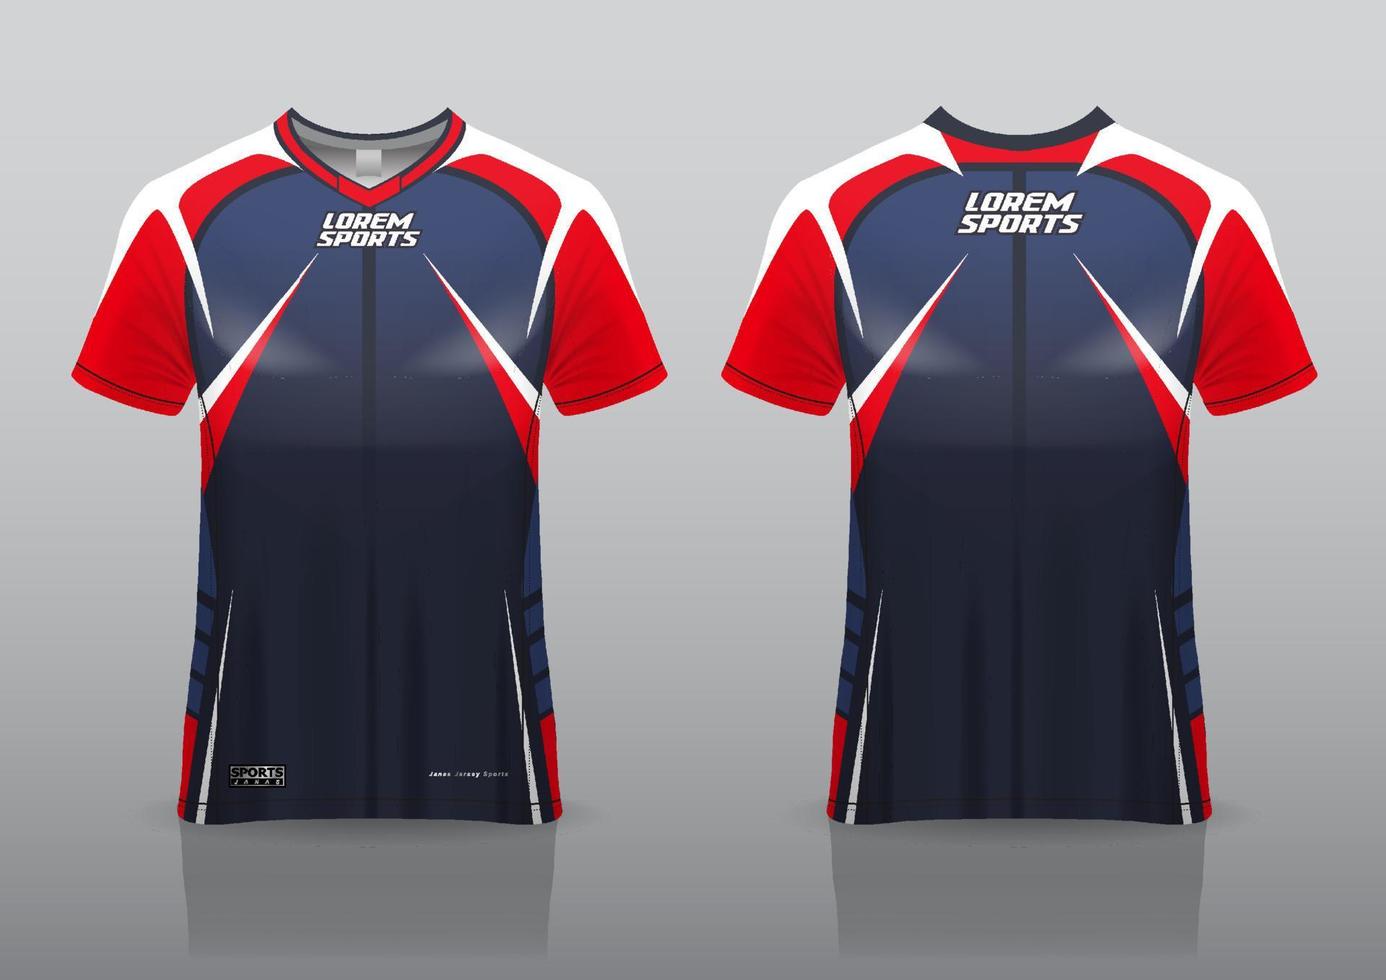 Vista frontal y posterior del diseño de juegos de la camiseta de esport vector